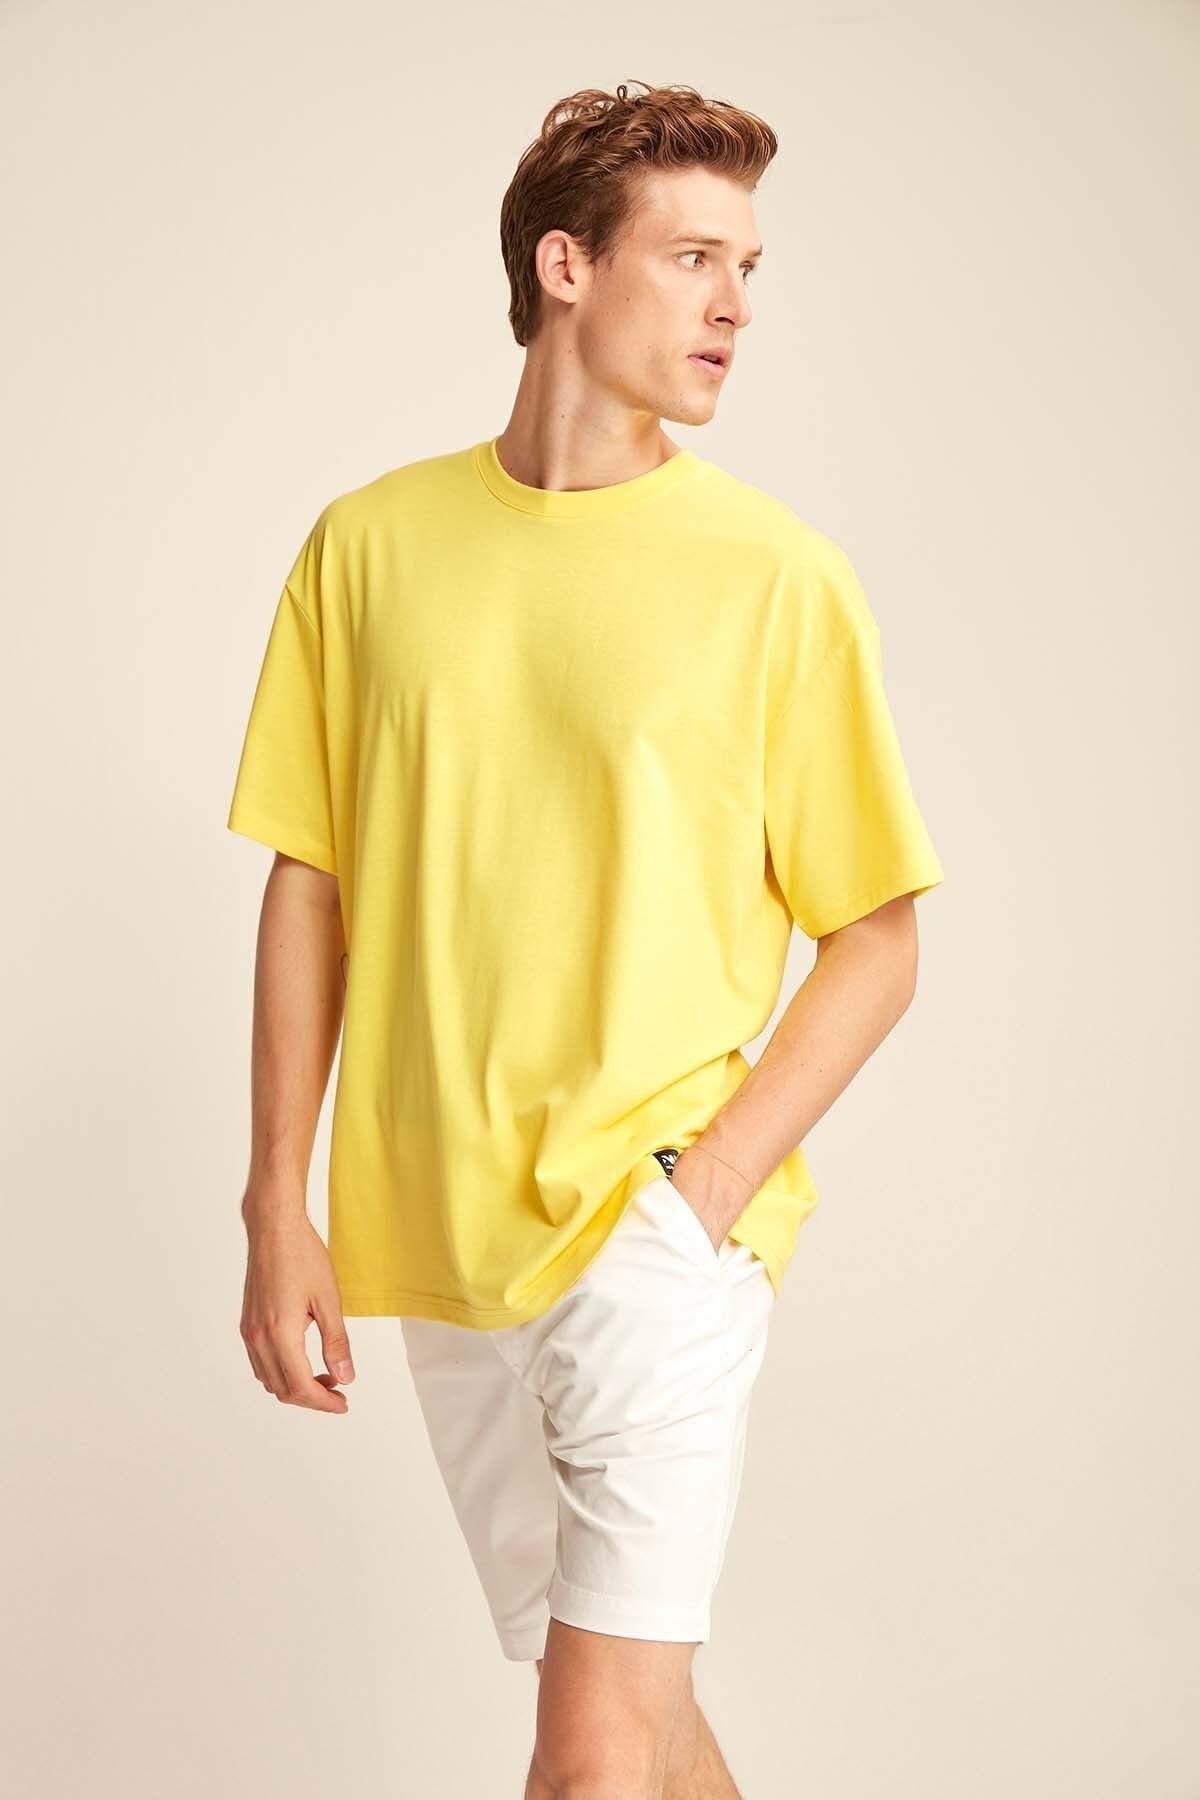 Jett Oversize Chick Yellow T-shirt